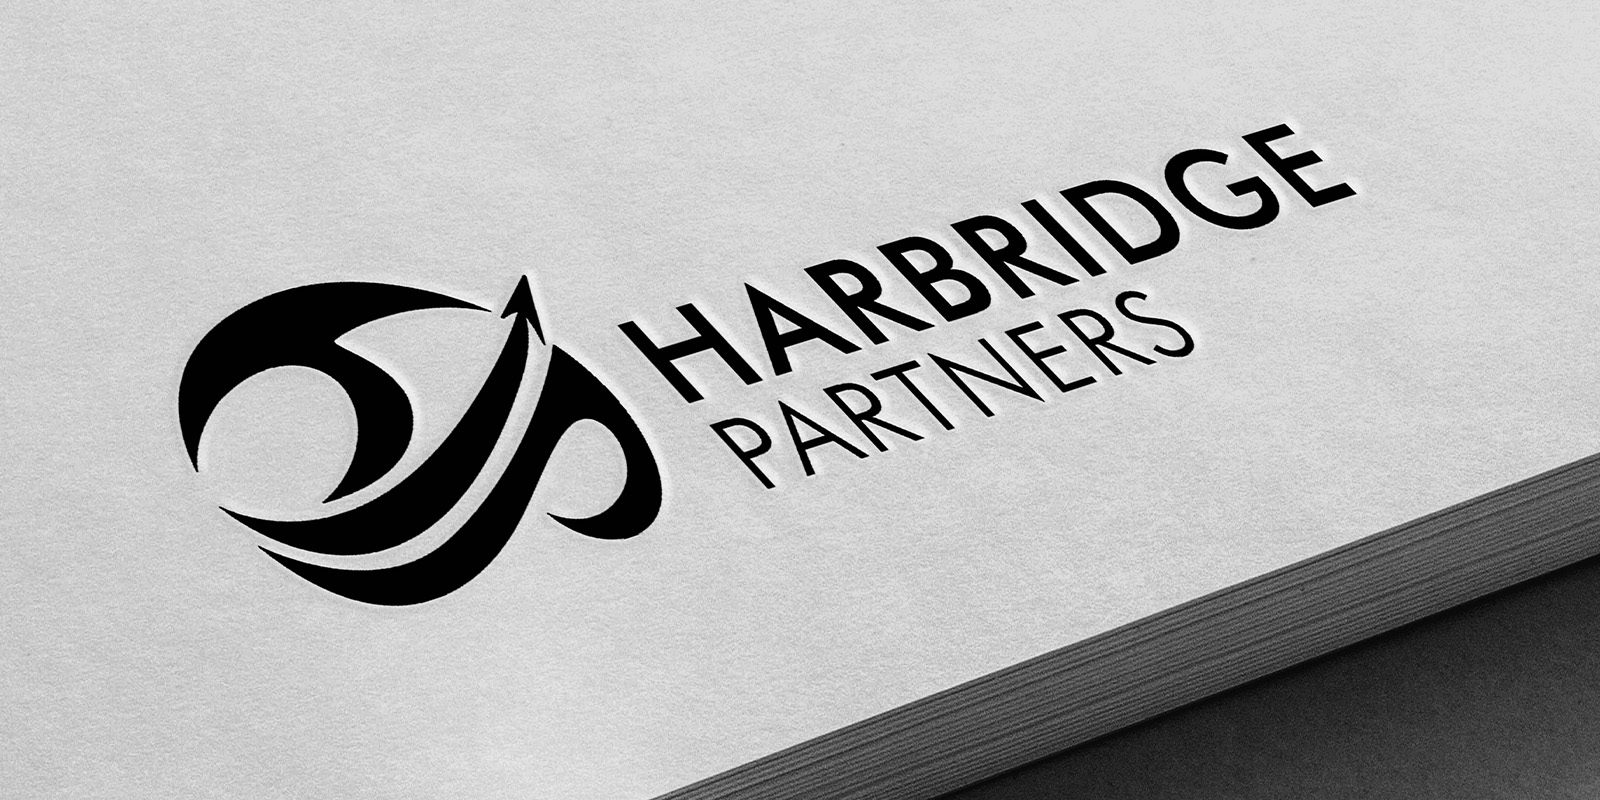 ipulse design web marketing branding harbridge logo on paper